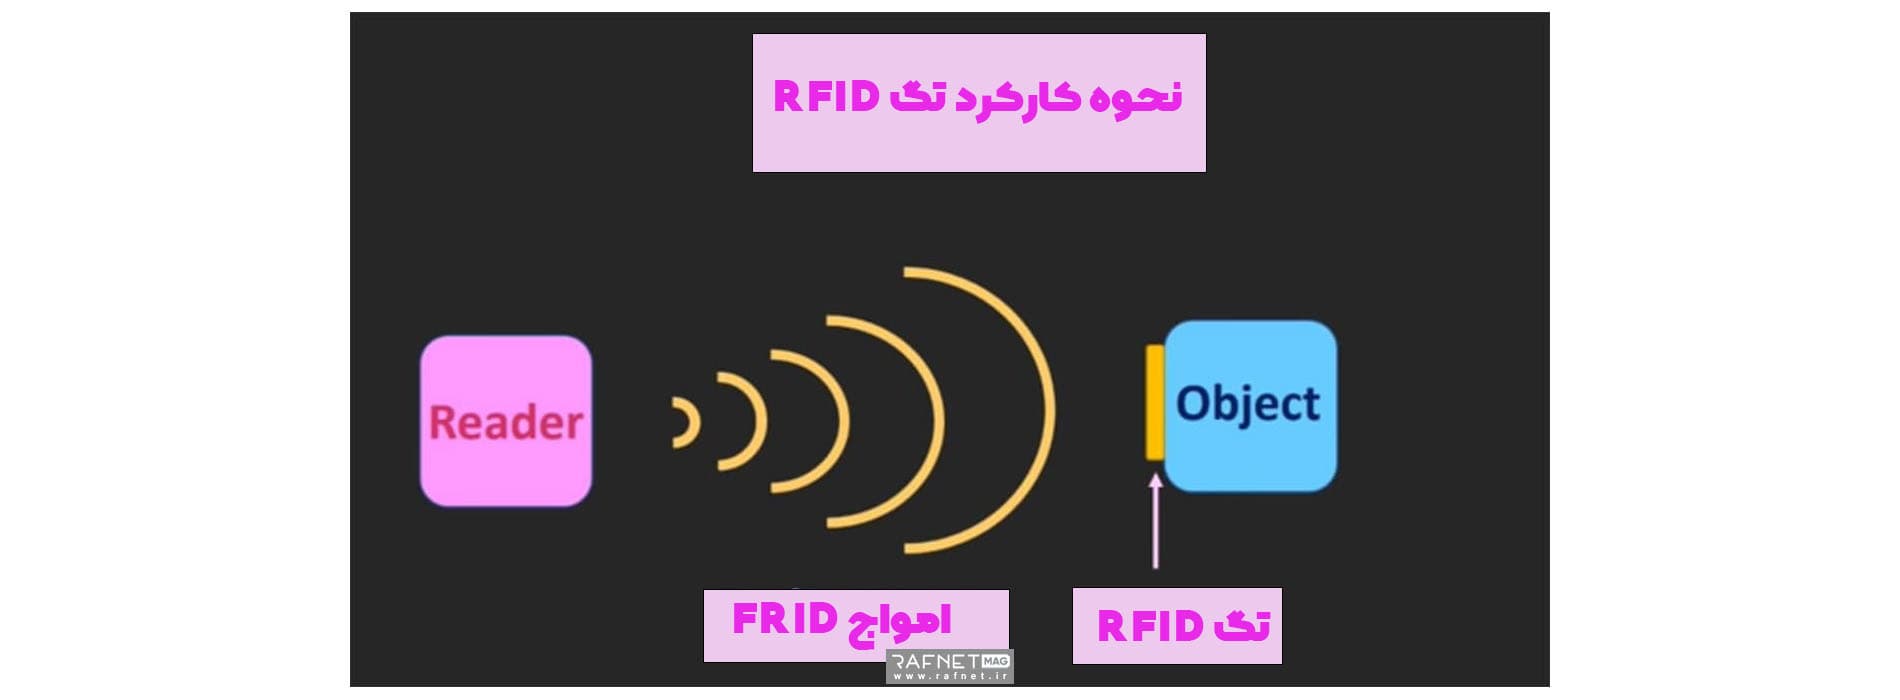 نحوه کارکرد تگ ضد سرقت RFID